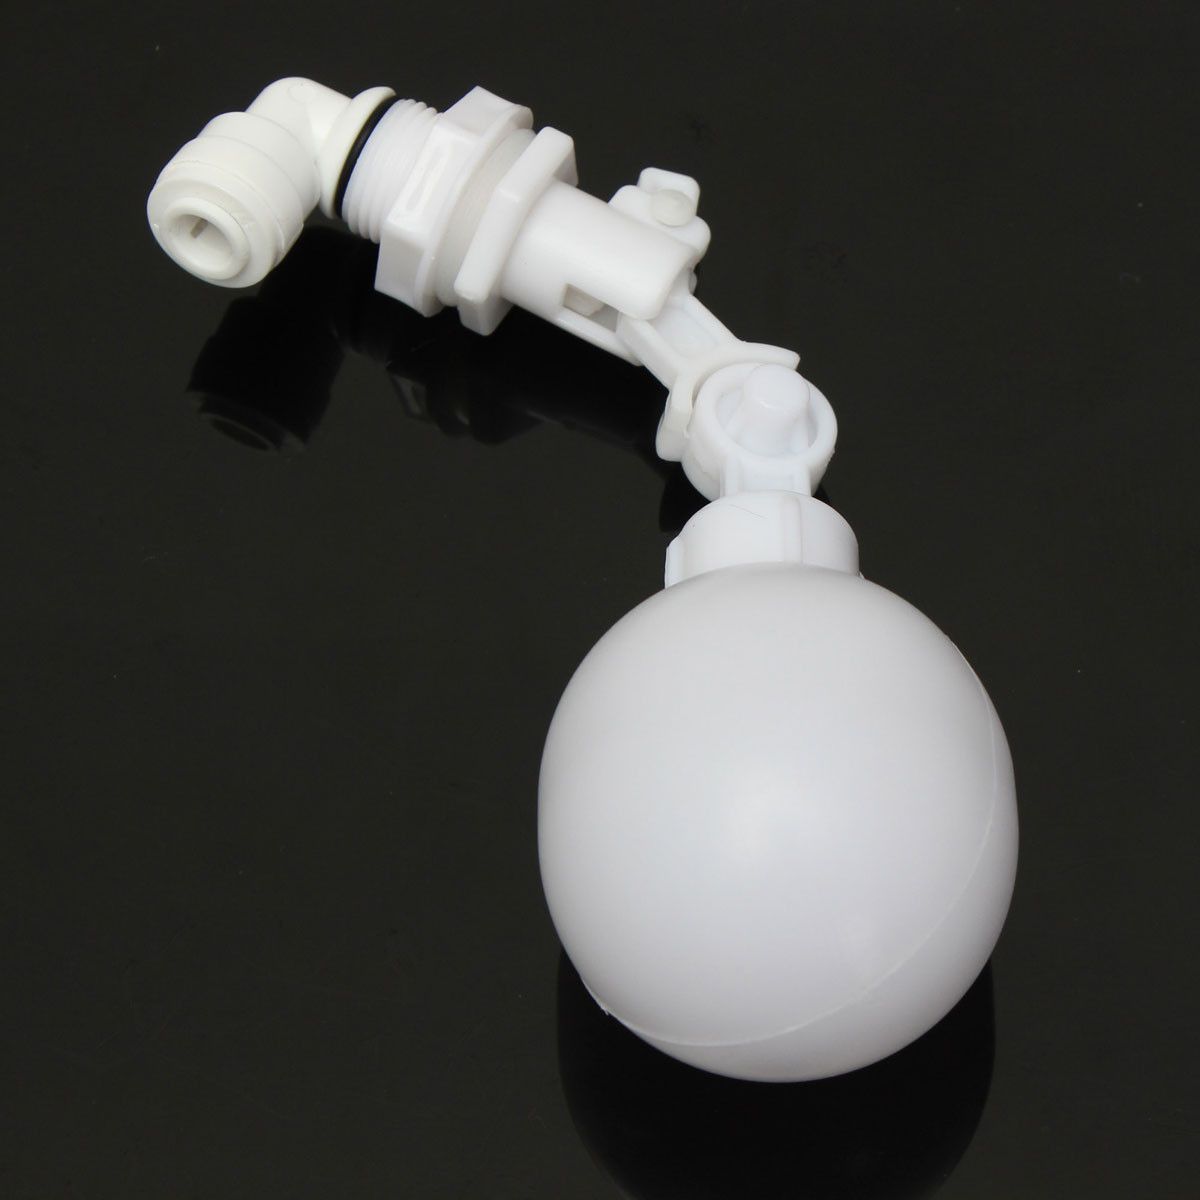 38quot-Adjustable-Plastic-Mini-Float-Ball-Valve-Automatic-Shut-Off-For-Aquarium-Fish-Tank-RO-DI-Reve-1528681